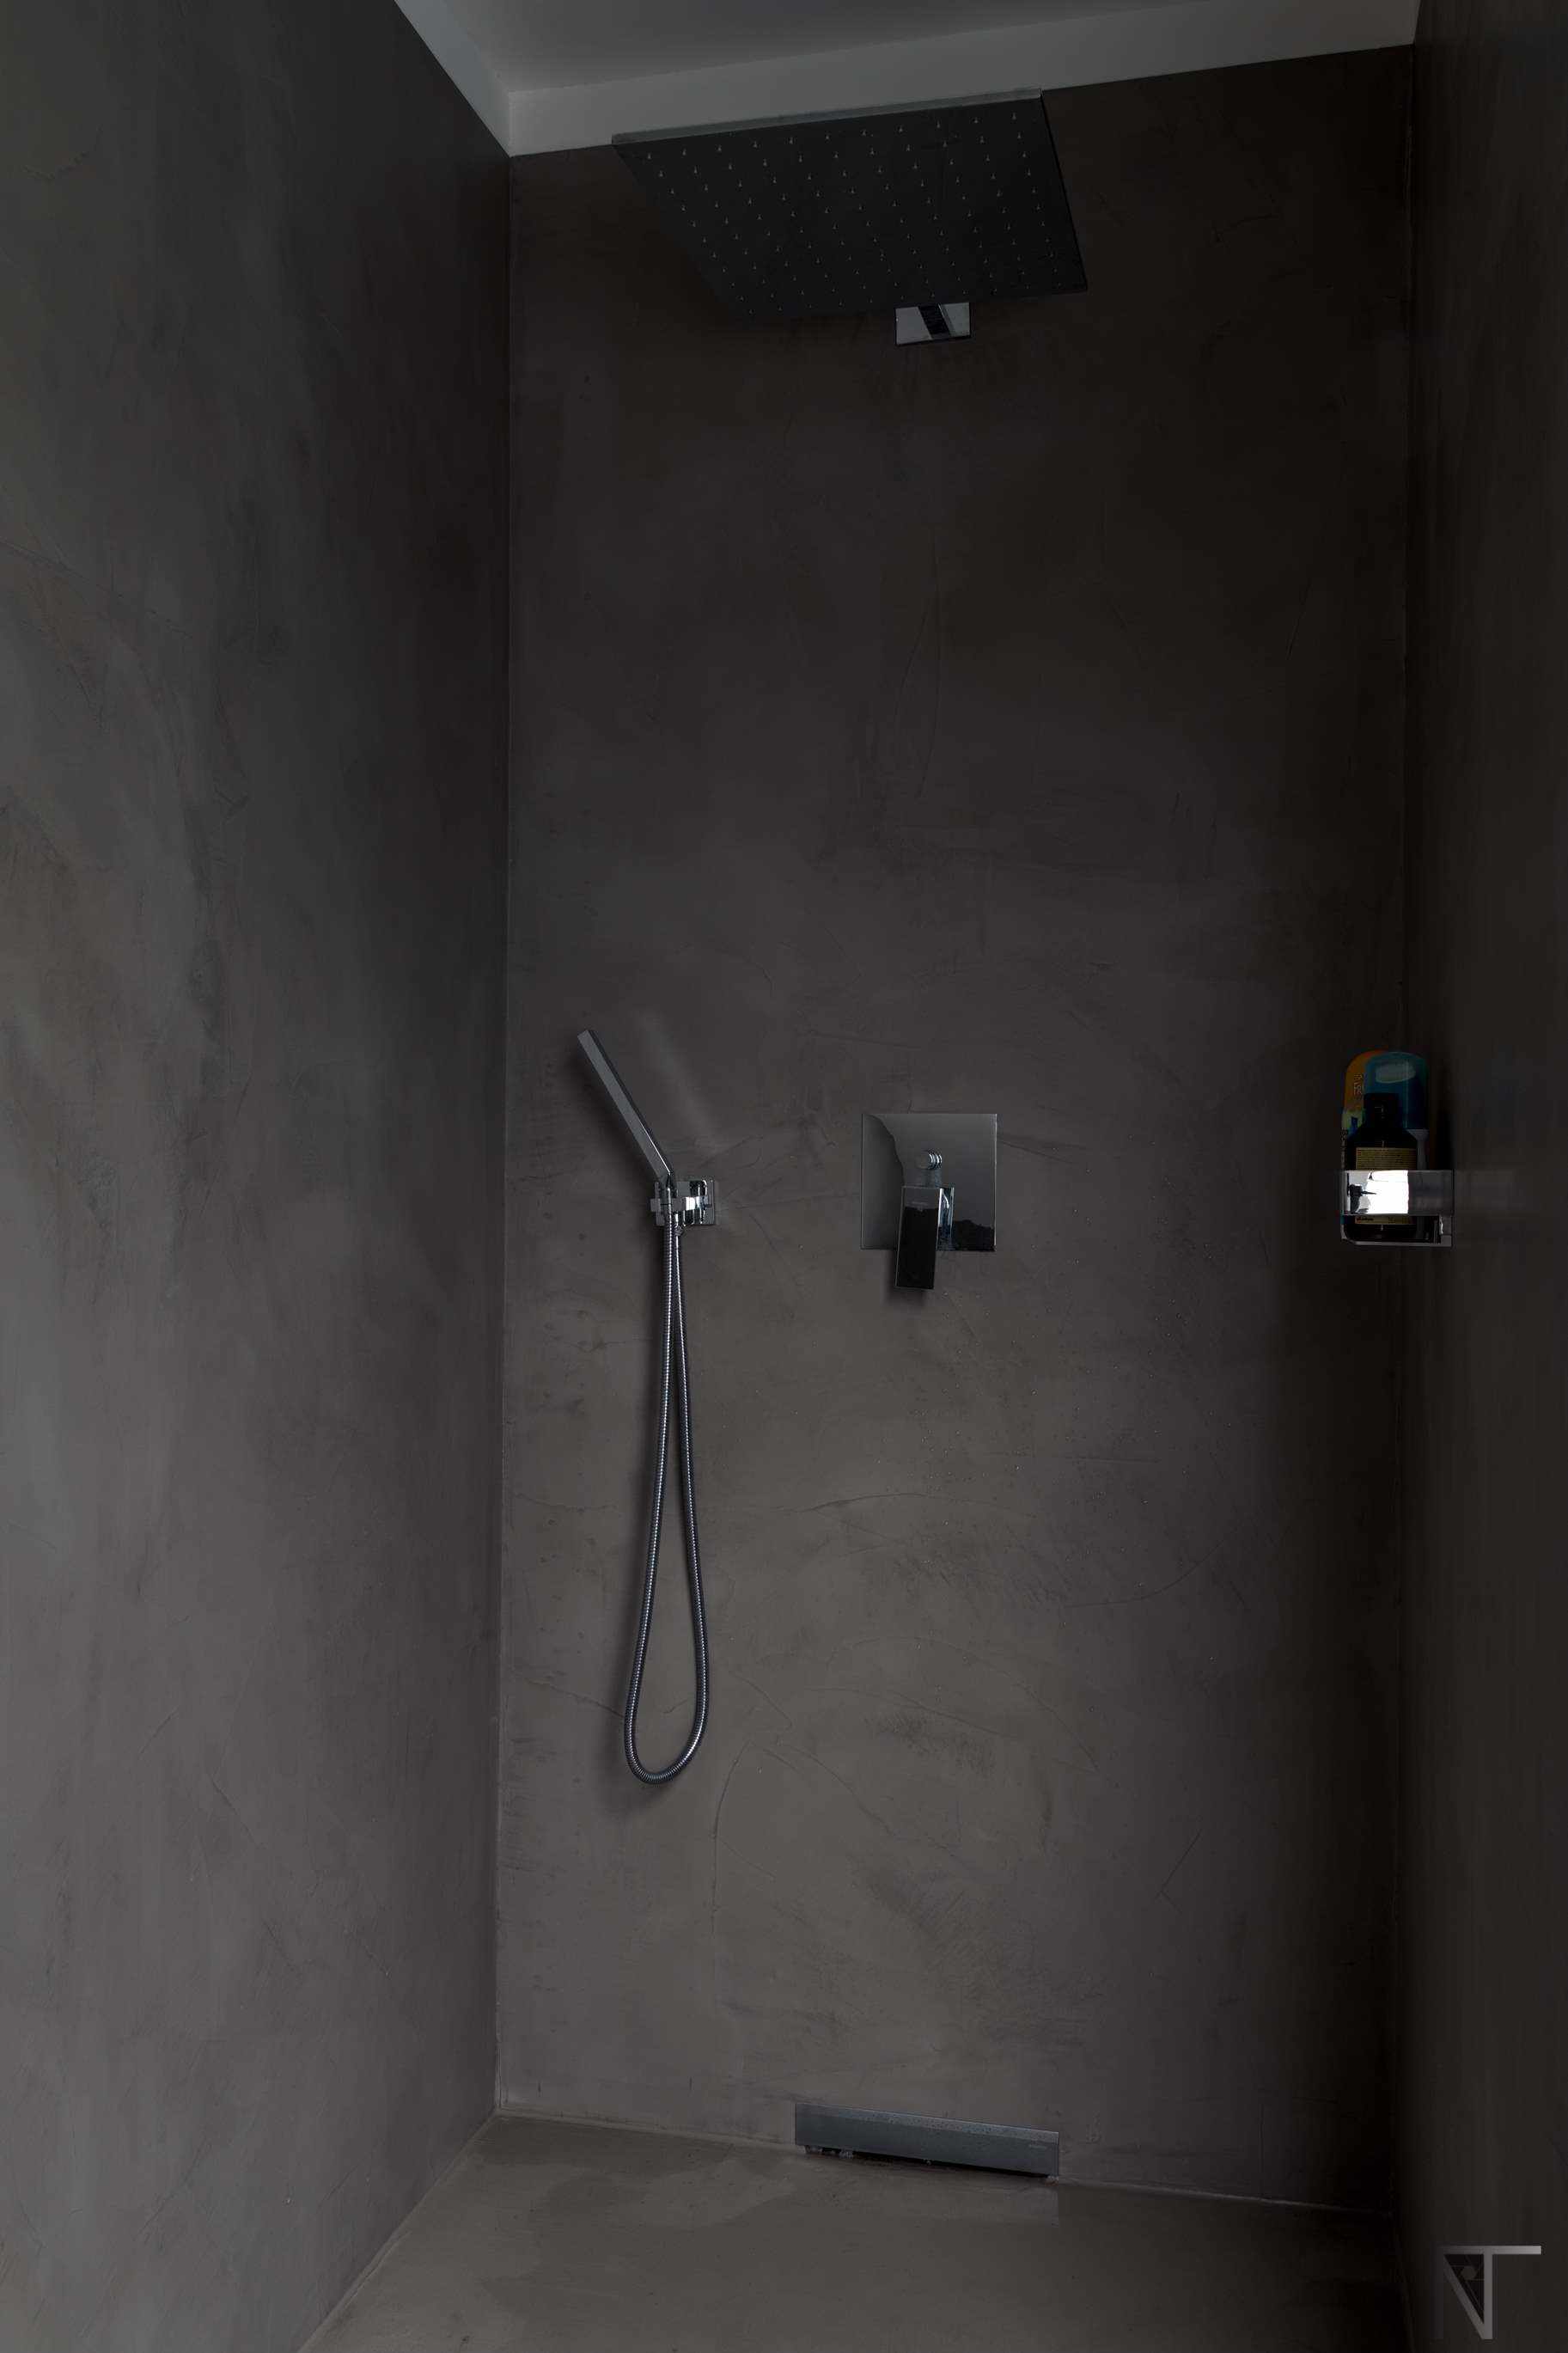 Ванная комната с кафельной плиткой, отремонтированная с использованием микроцемента в душе